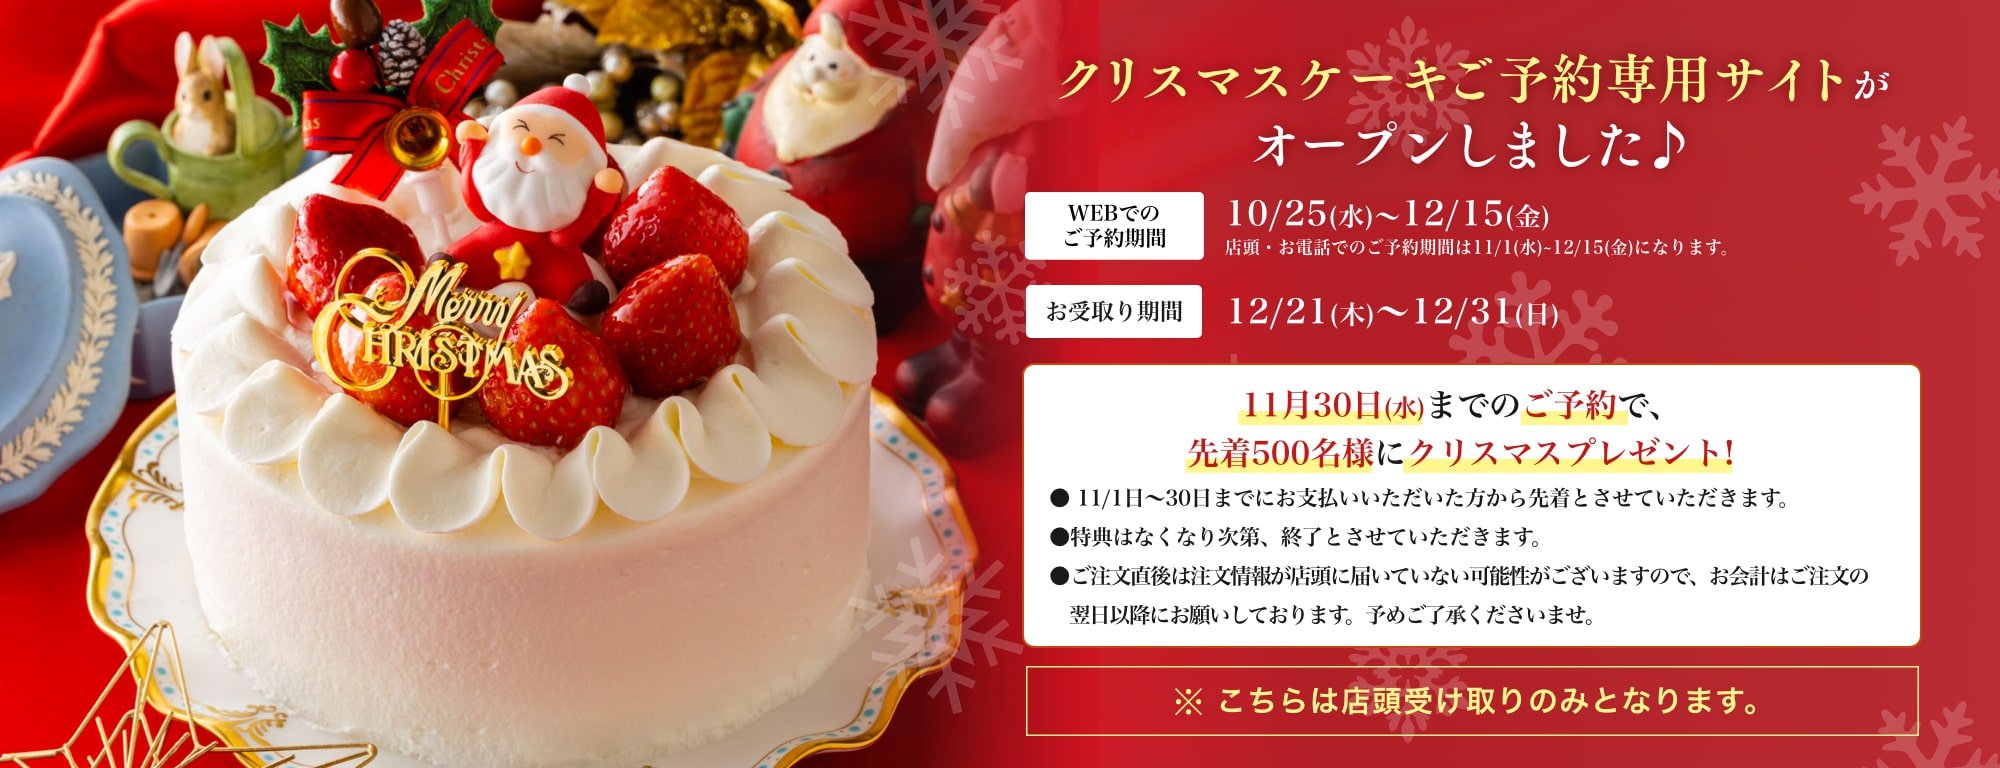 福岡の洋菓子 通販 クリスマス予約サイト